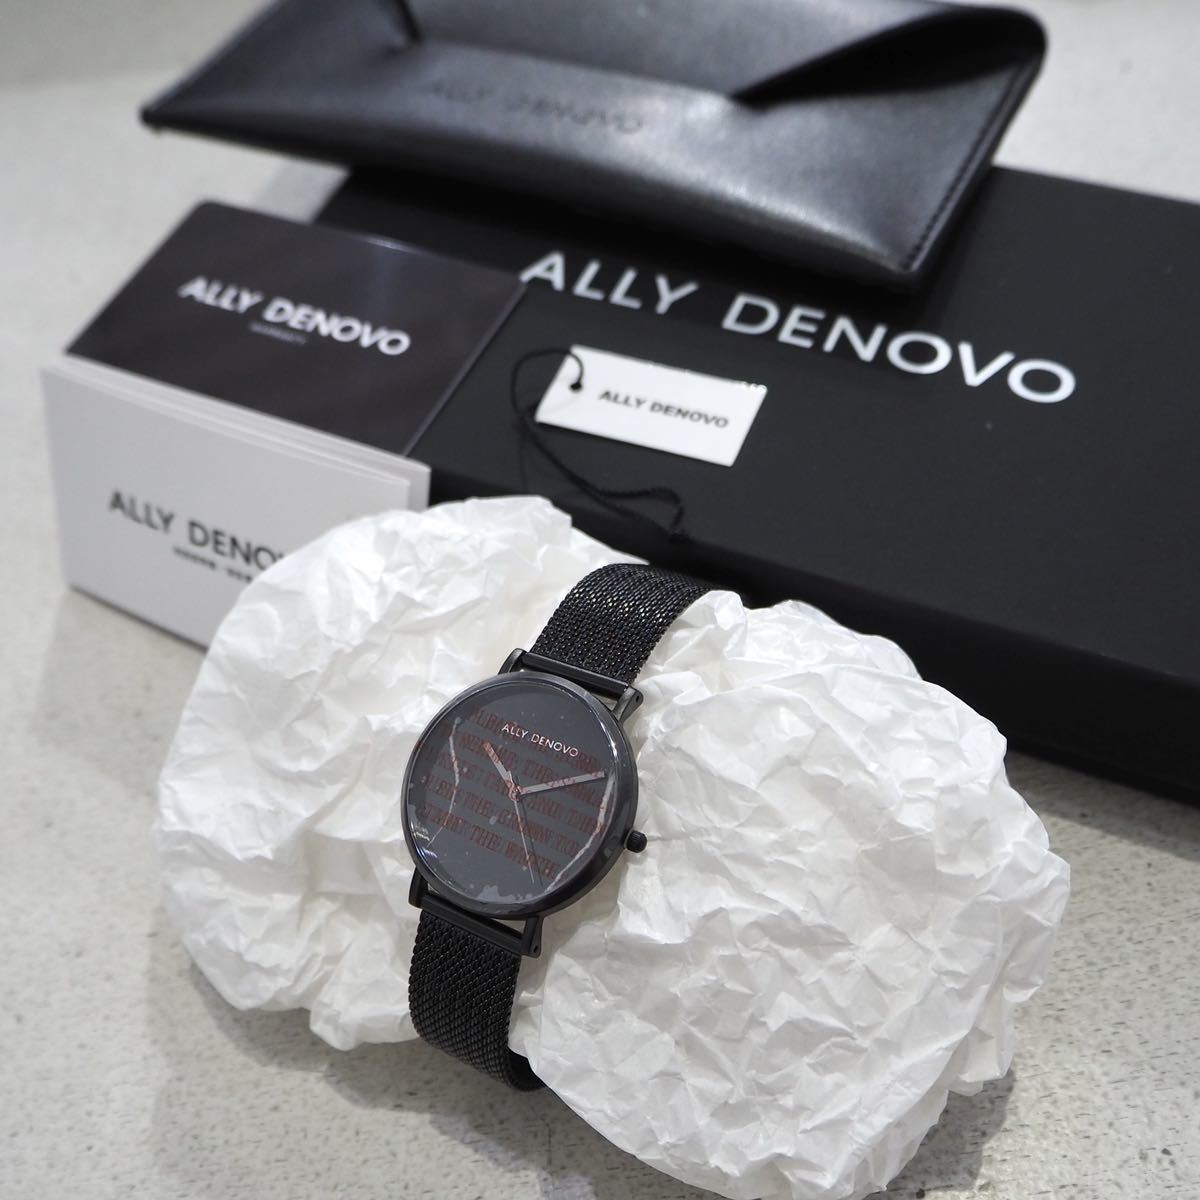 新品 定価22000円 スイス ALLY DENOVO 大理石 デザイン 腕時計 生活防水 ブラック 黒 メンズ レディース ウォッチ 時計 アナログ シンプル